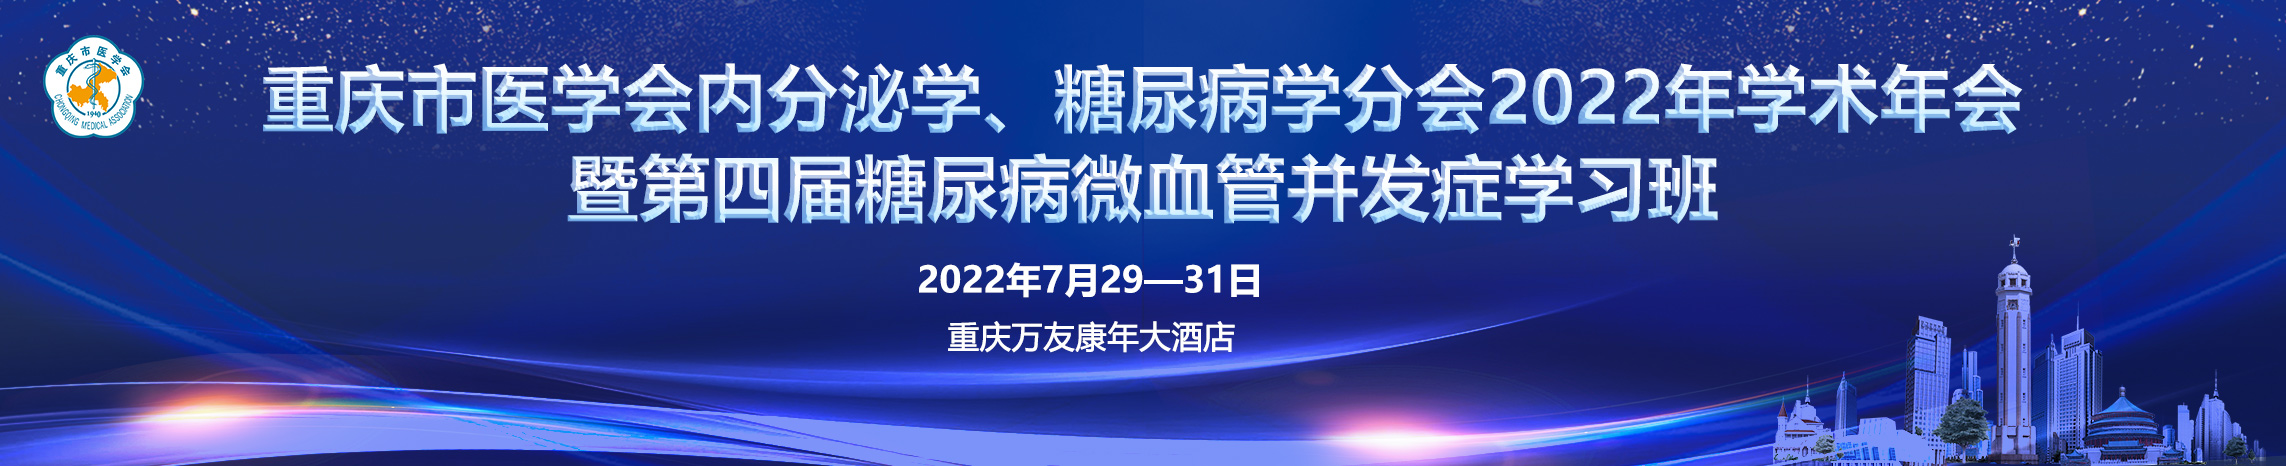 重庆市医学会内分泌学、糖尿病学分会2022年学术年会暨第四届糖尿病微血管并发症学习班